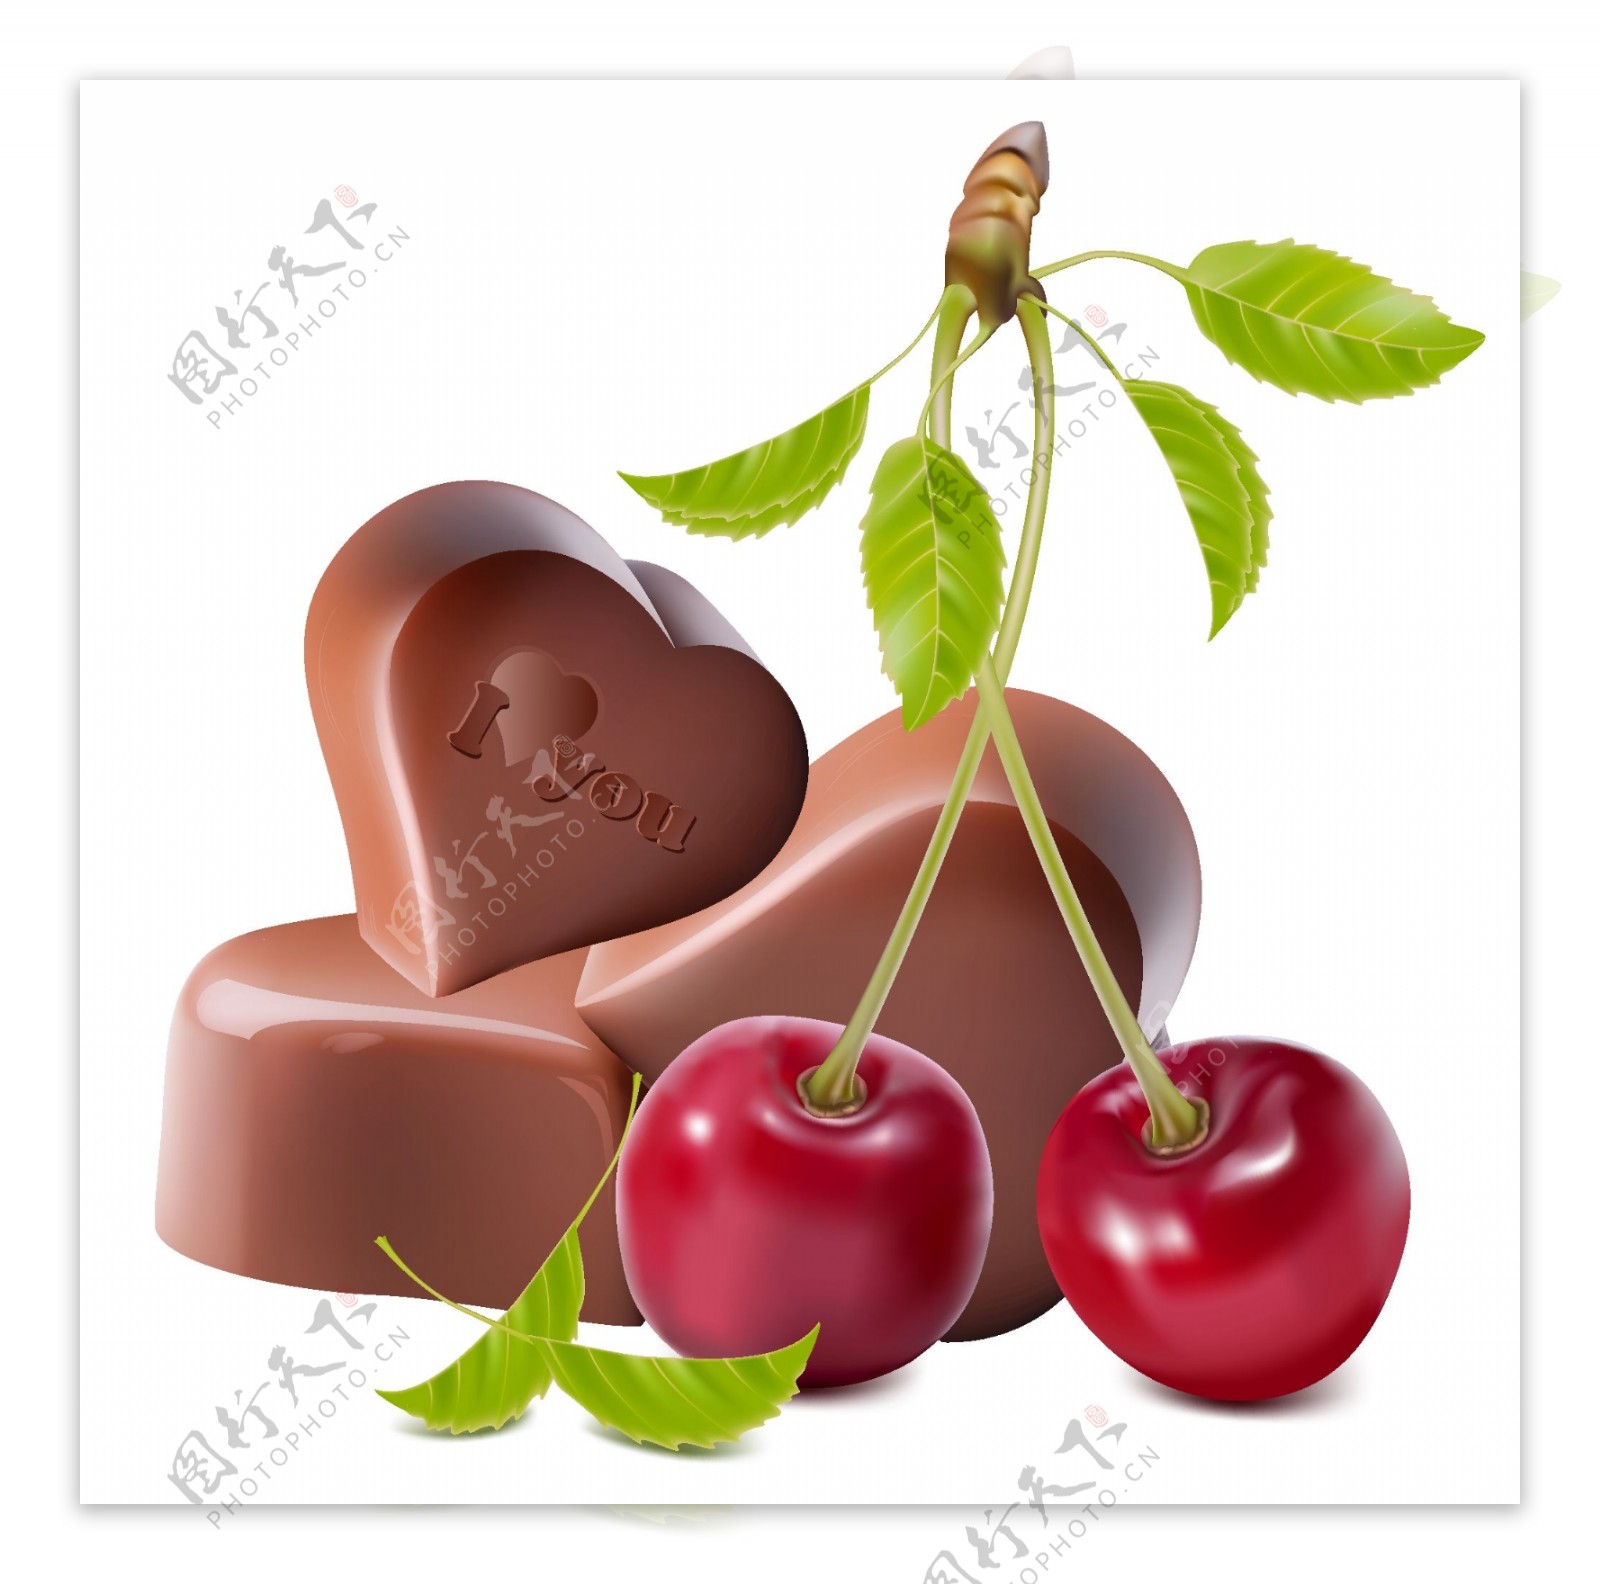 樱桃巧克力甜点 库存图片. 图片 包括有 鸡蛋, 可口, 微型, 甜甜, 颜色, 充满活力, 特写镜头, 巧克力 - 14920923